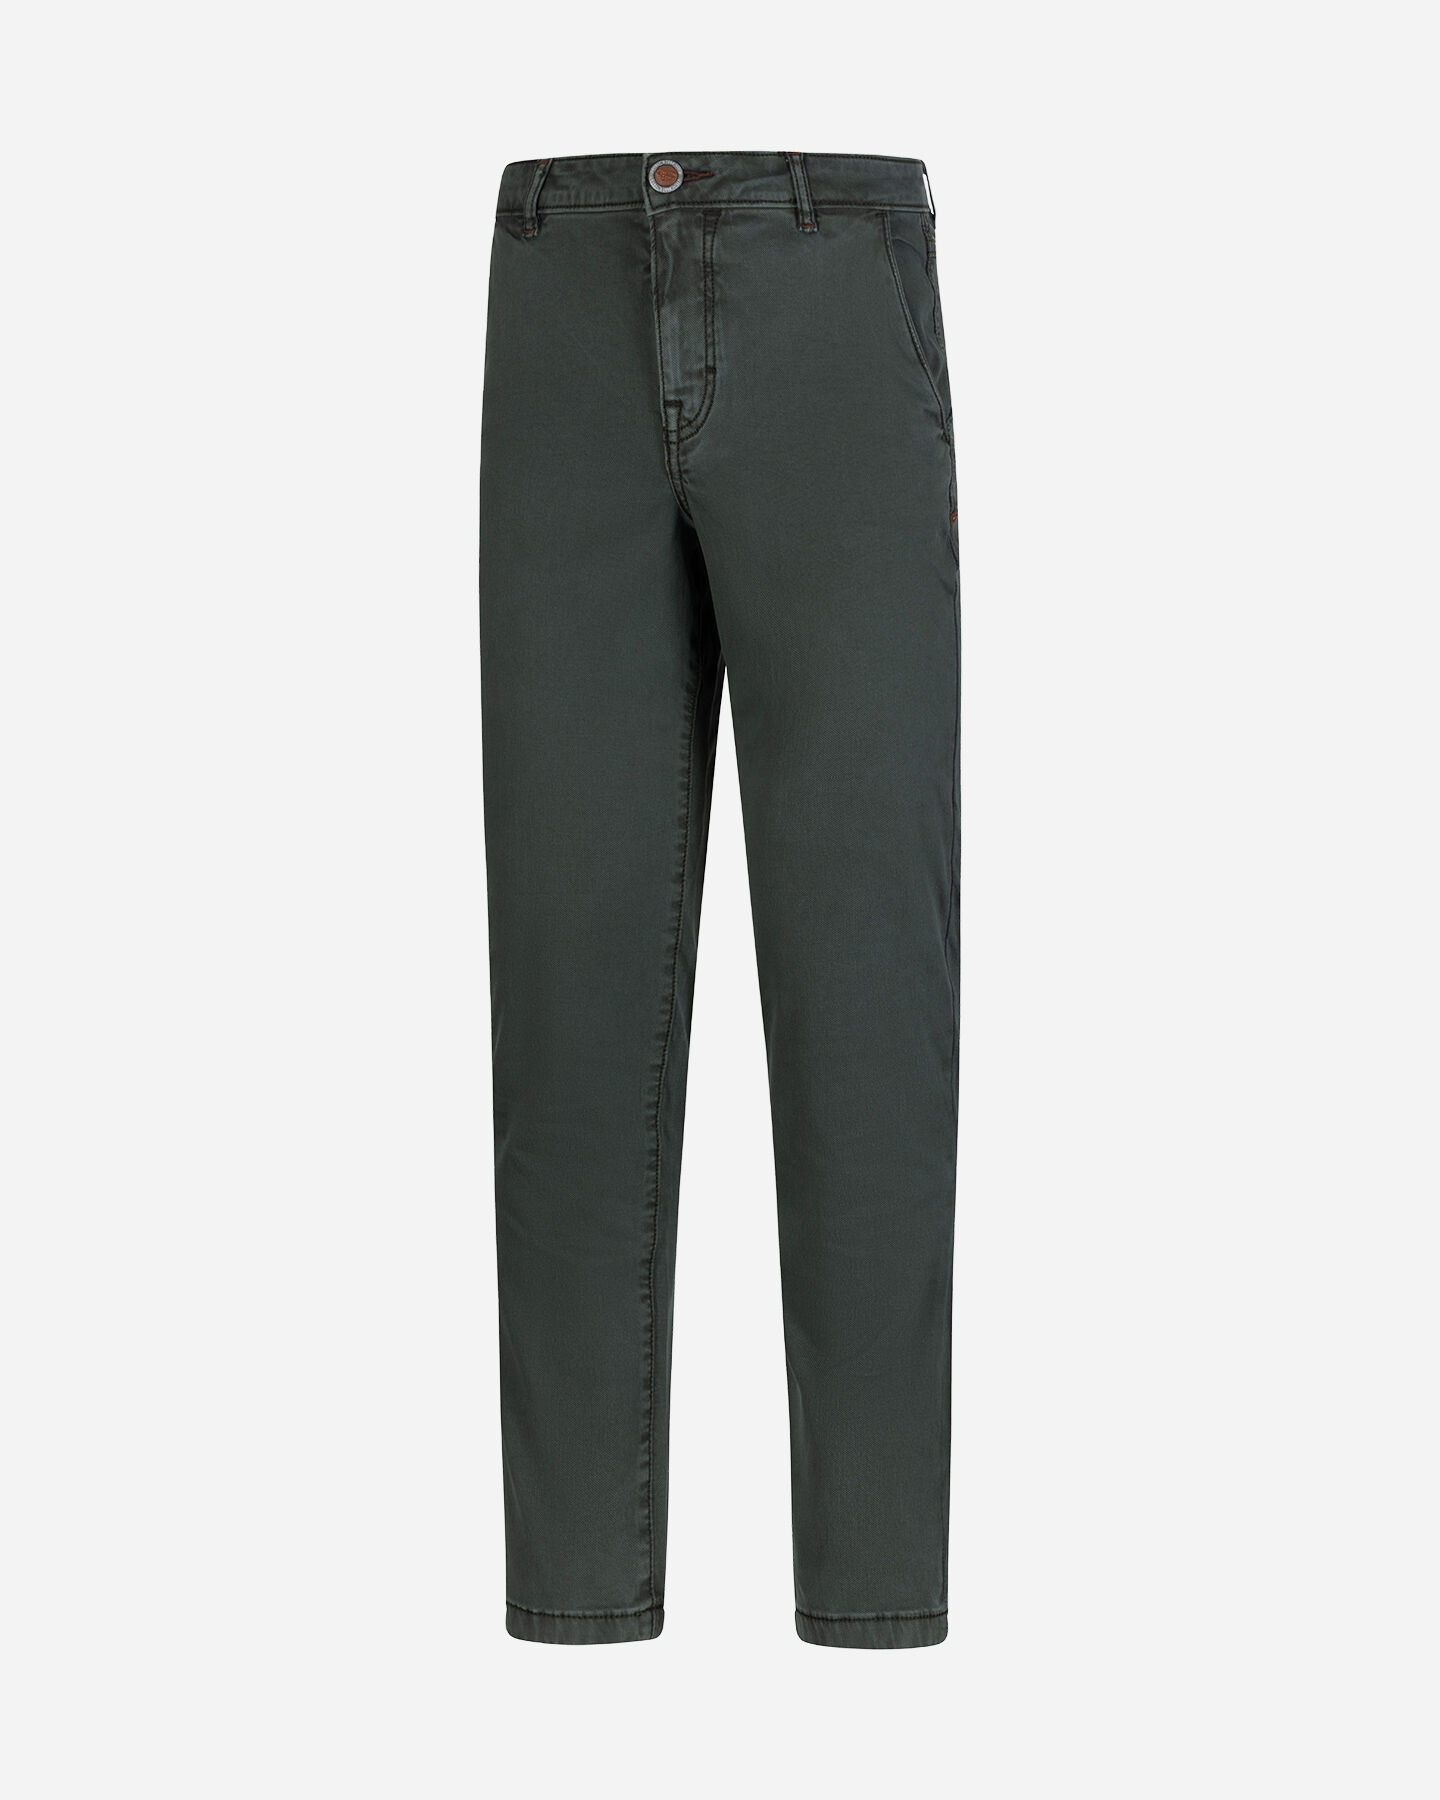  Pantalone COTTON BELT CHINO HYBRID M S4127003|043A|30 scatto 4